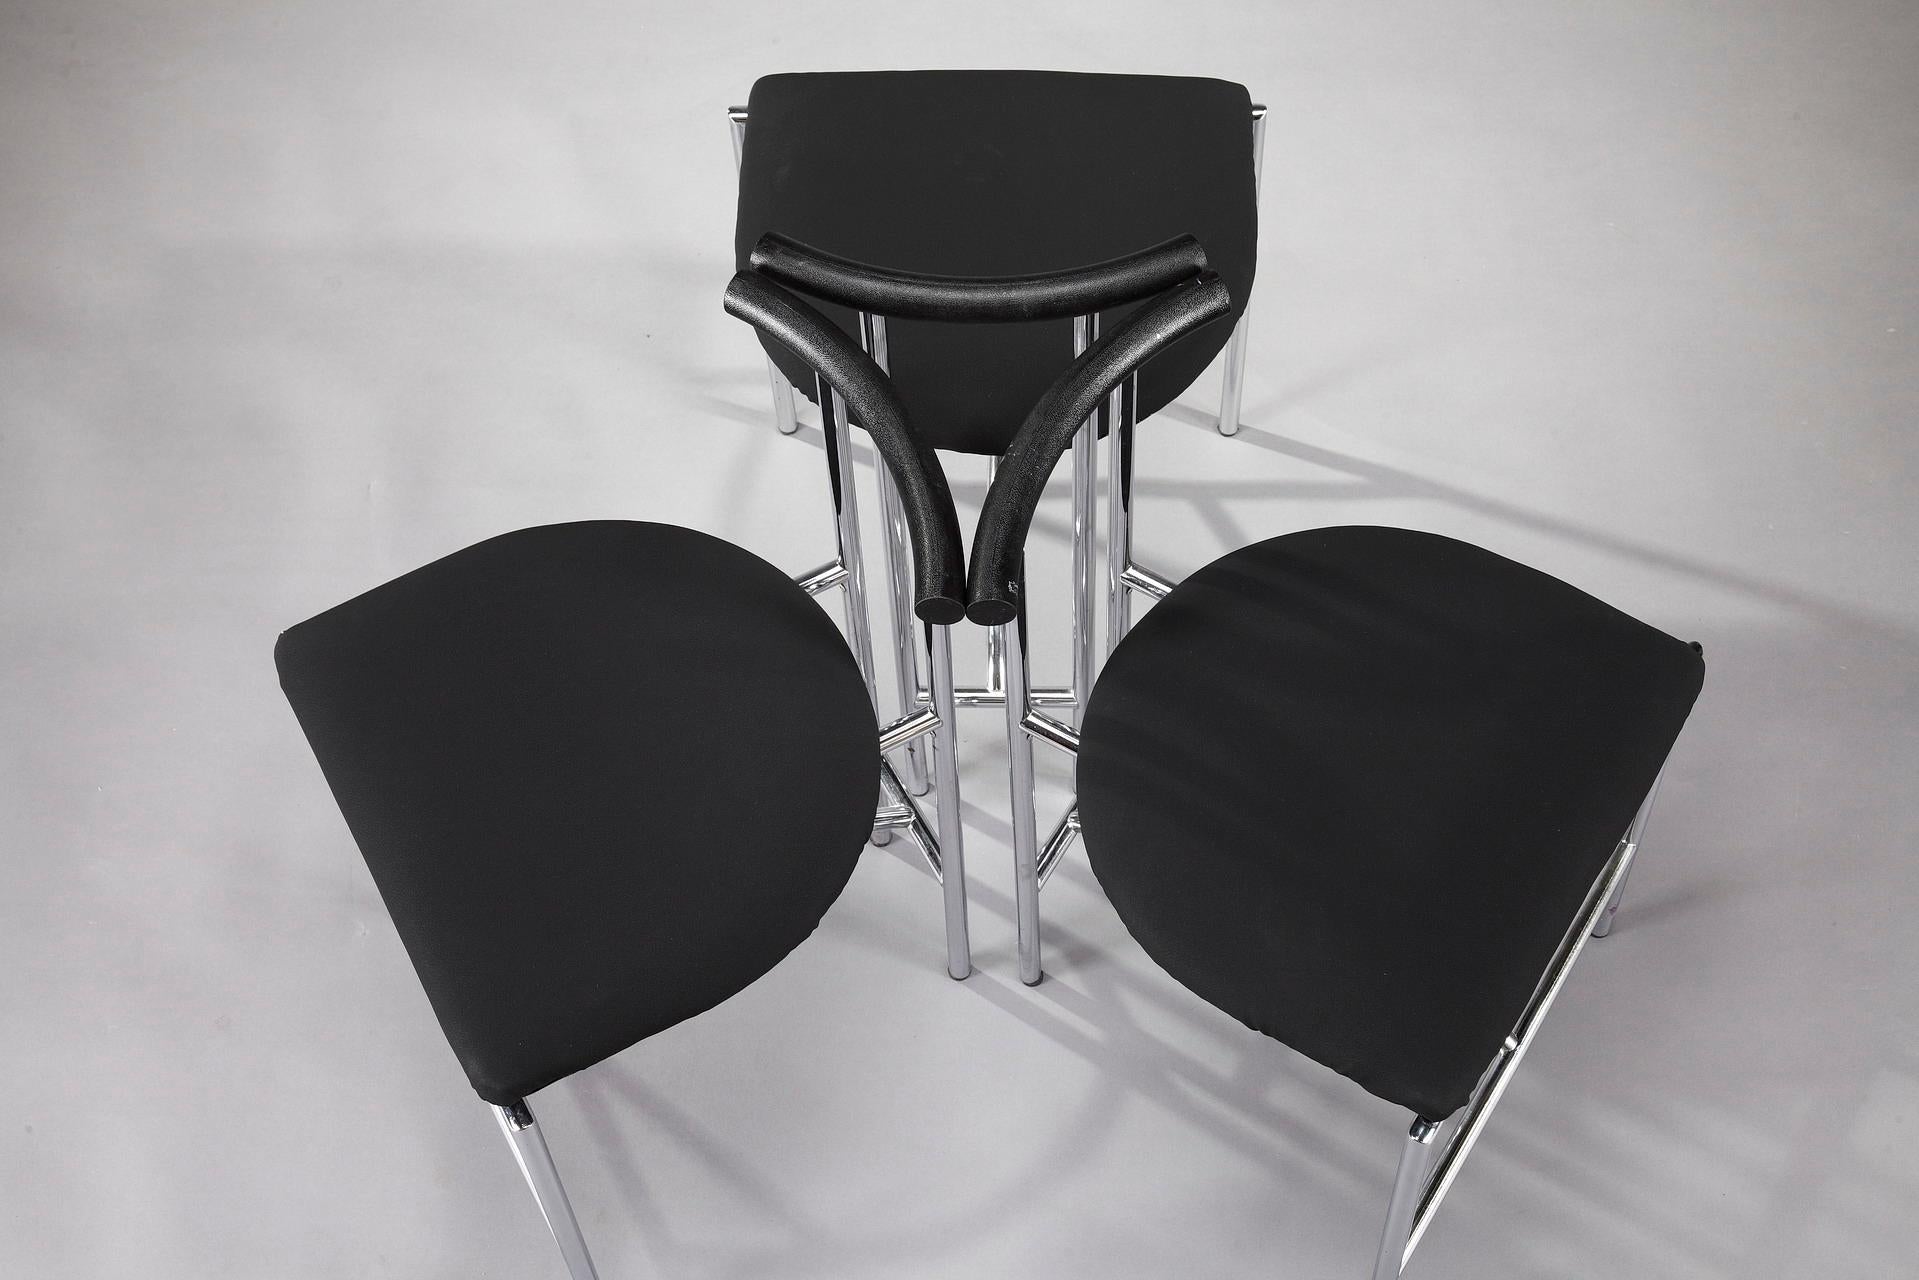 Plated 3 Bieffeplast Tokyo Chairs by Rodney Kinsman